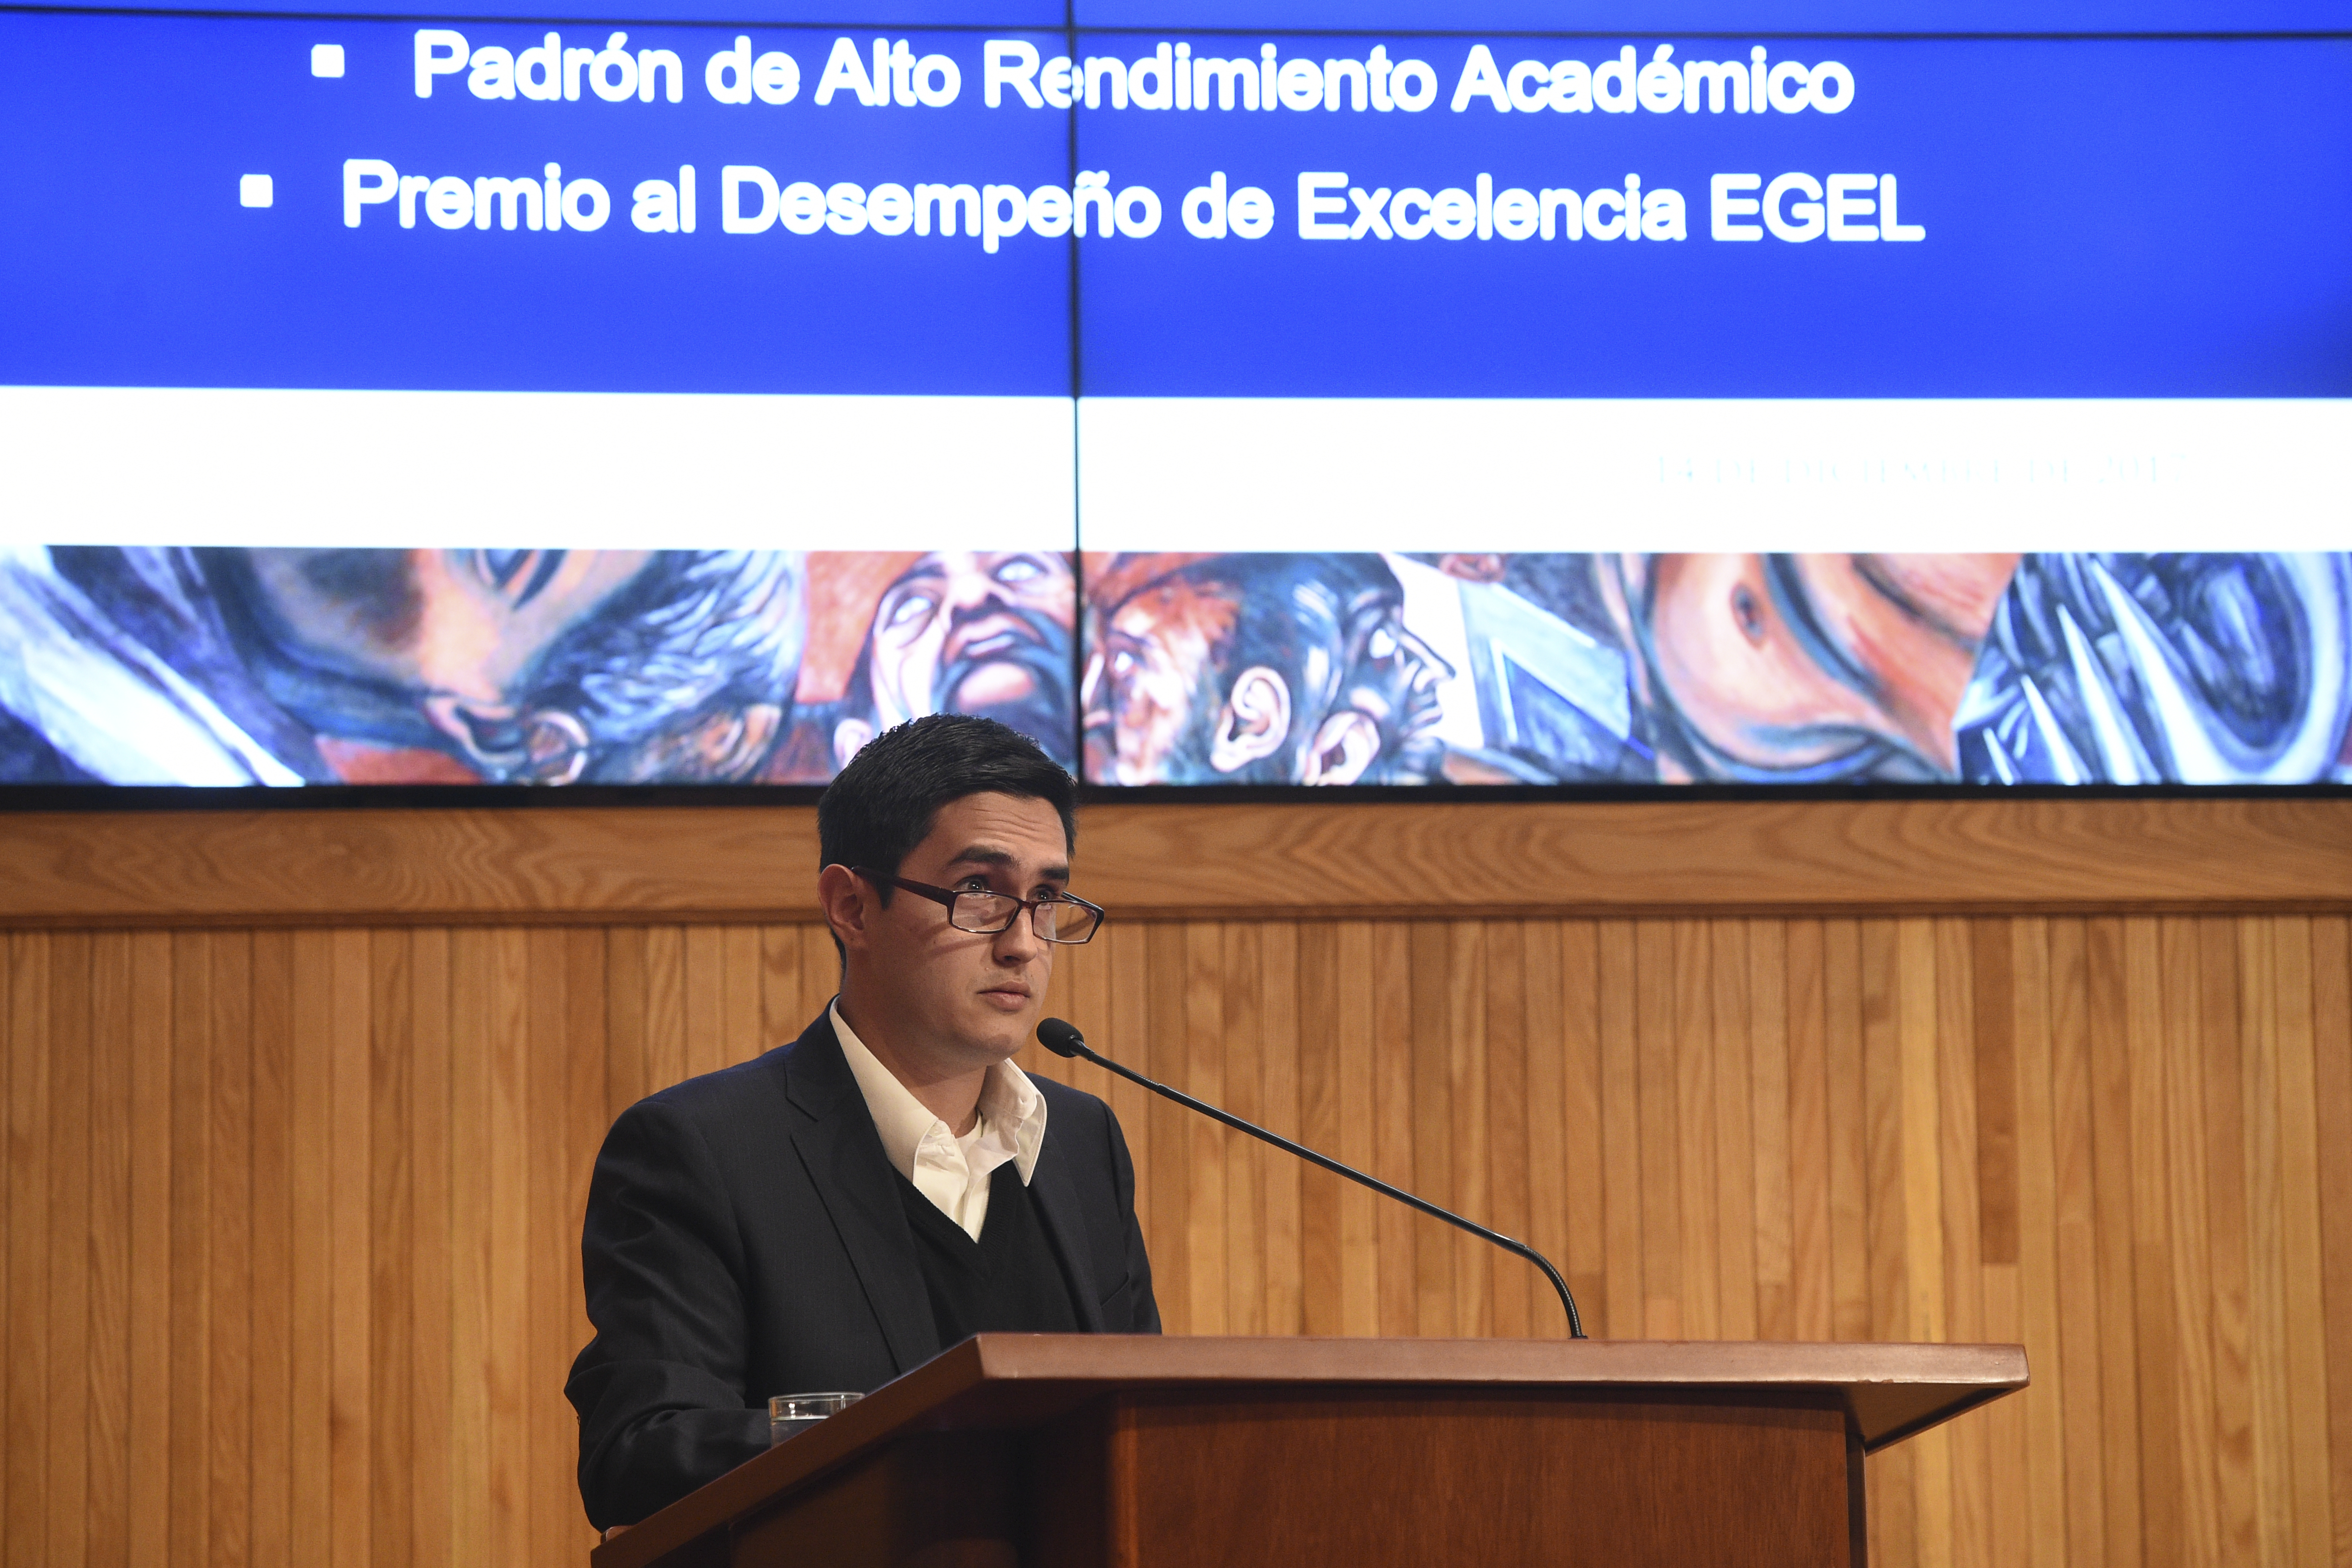 Alumno reconocida haciendo uso de la voz en el Paraninfo Enrique Díaz de León